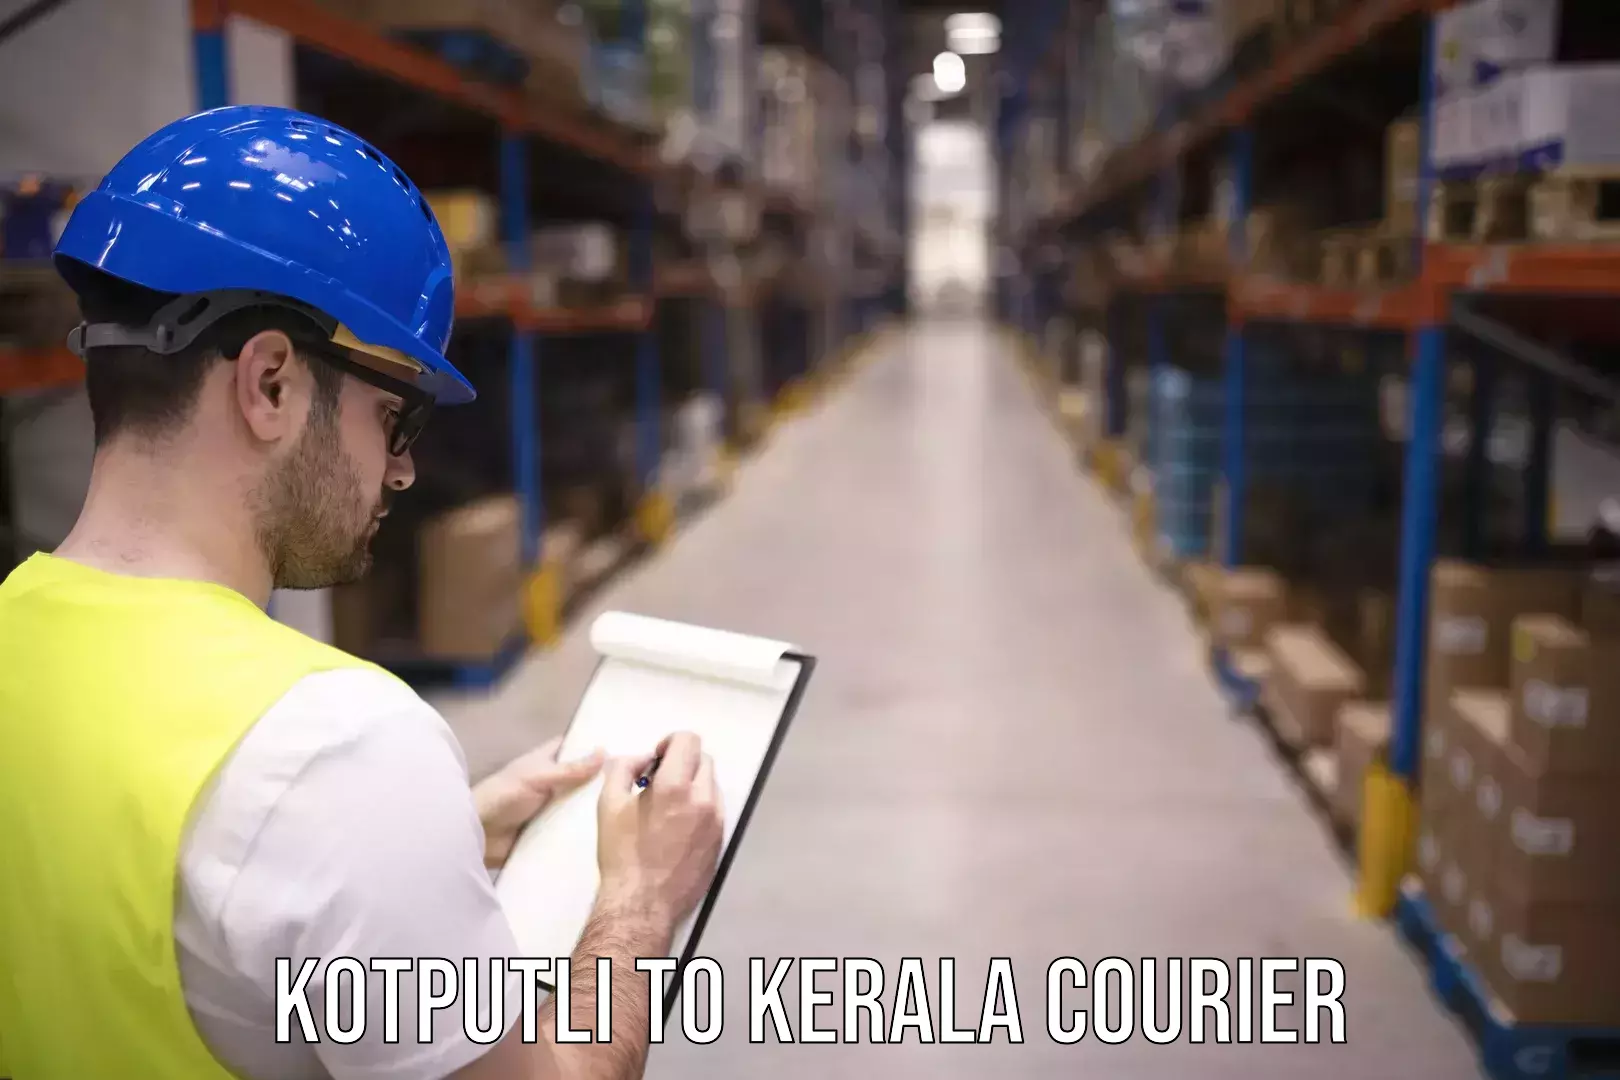 Express courier facilities Kotputli to Ponekkara